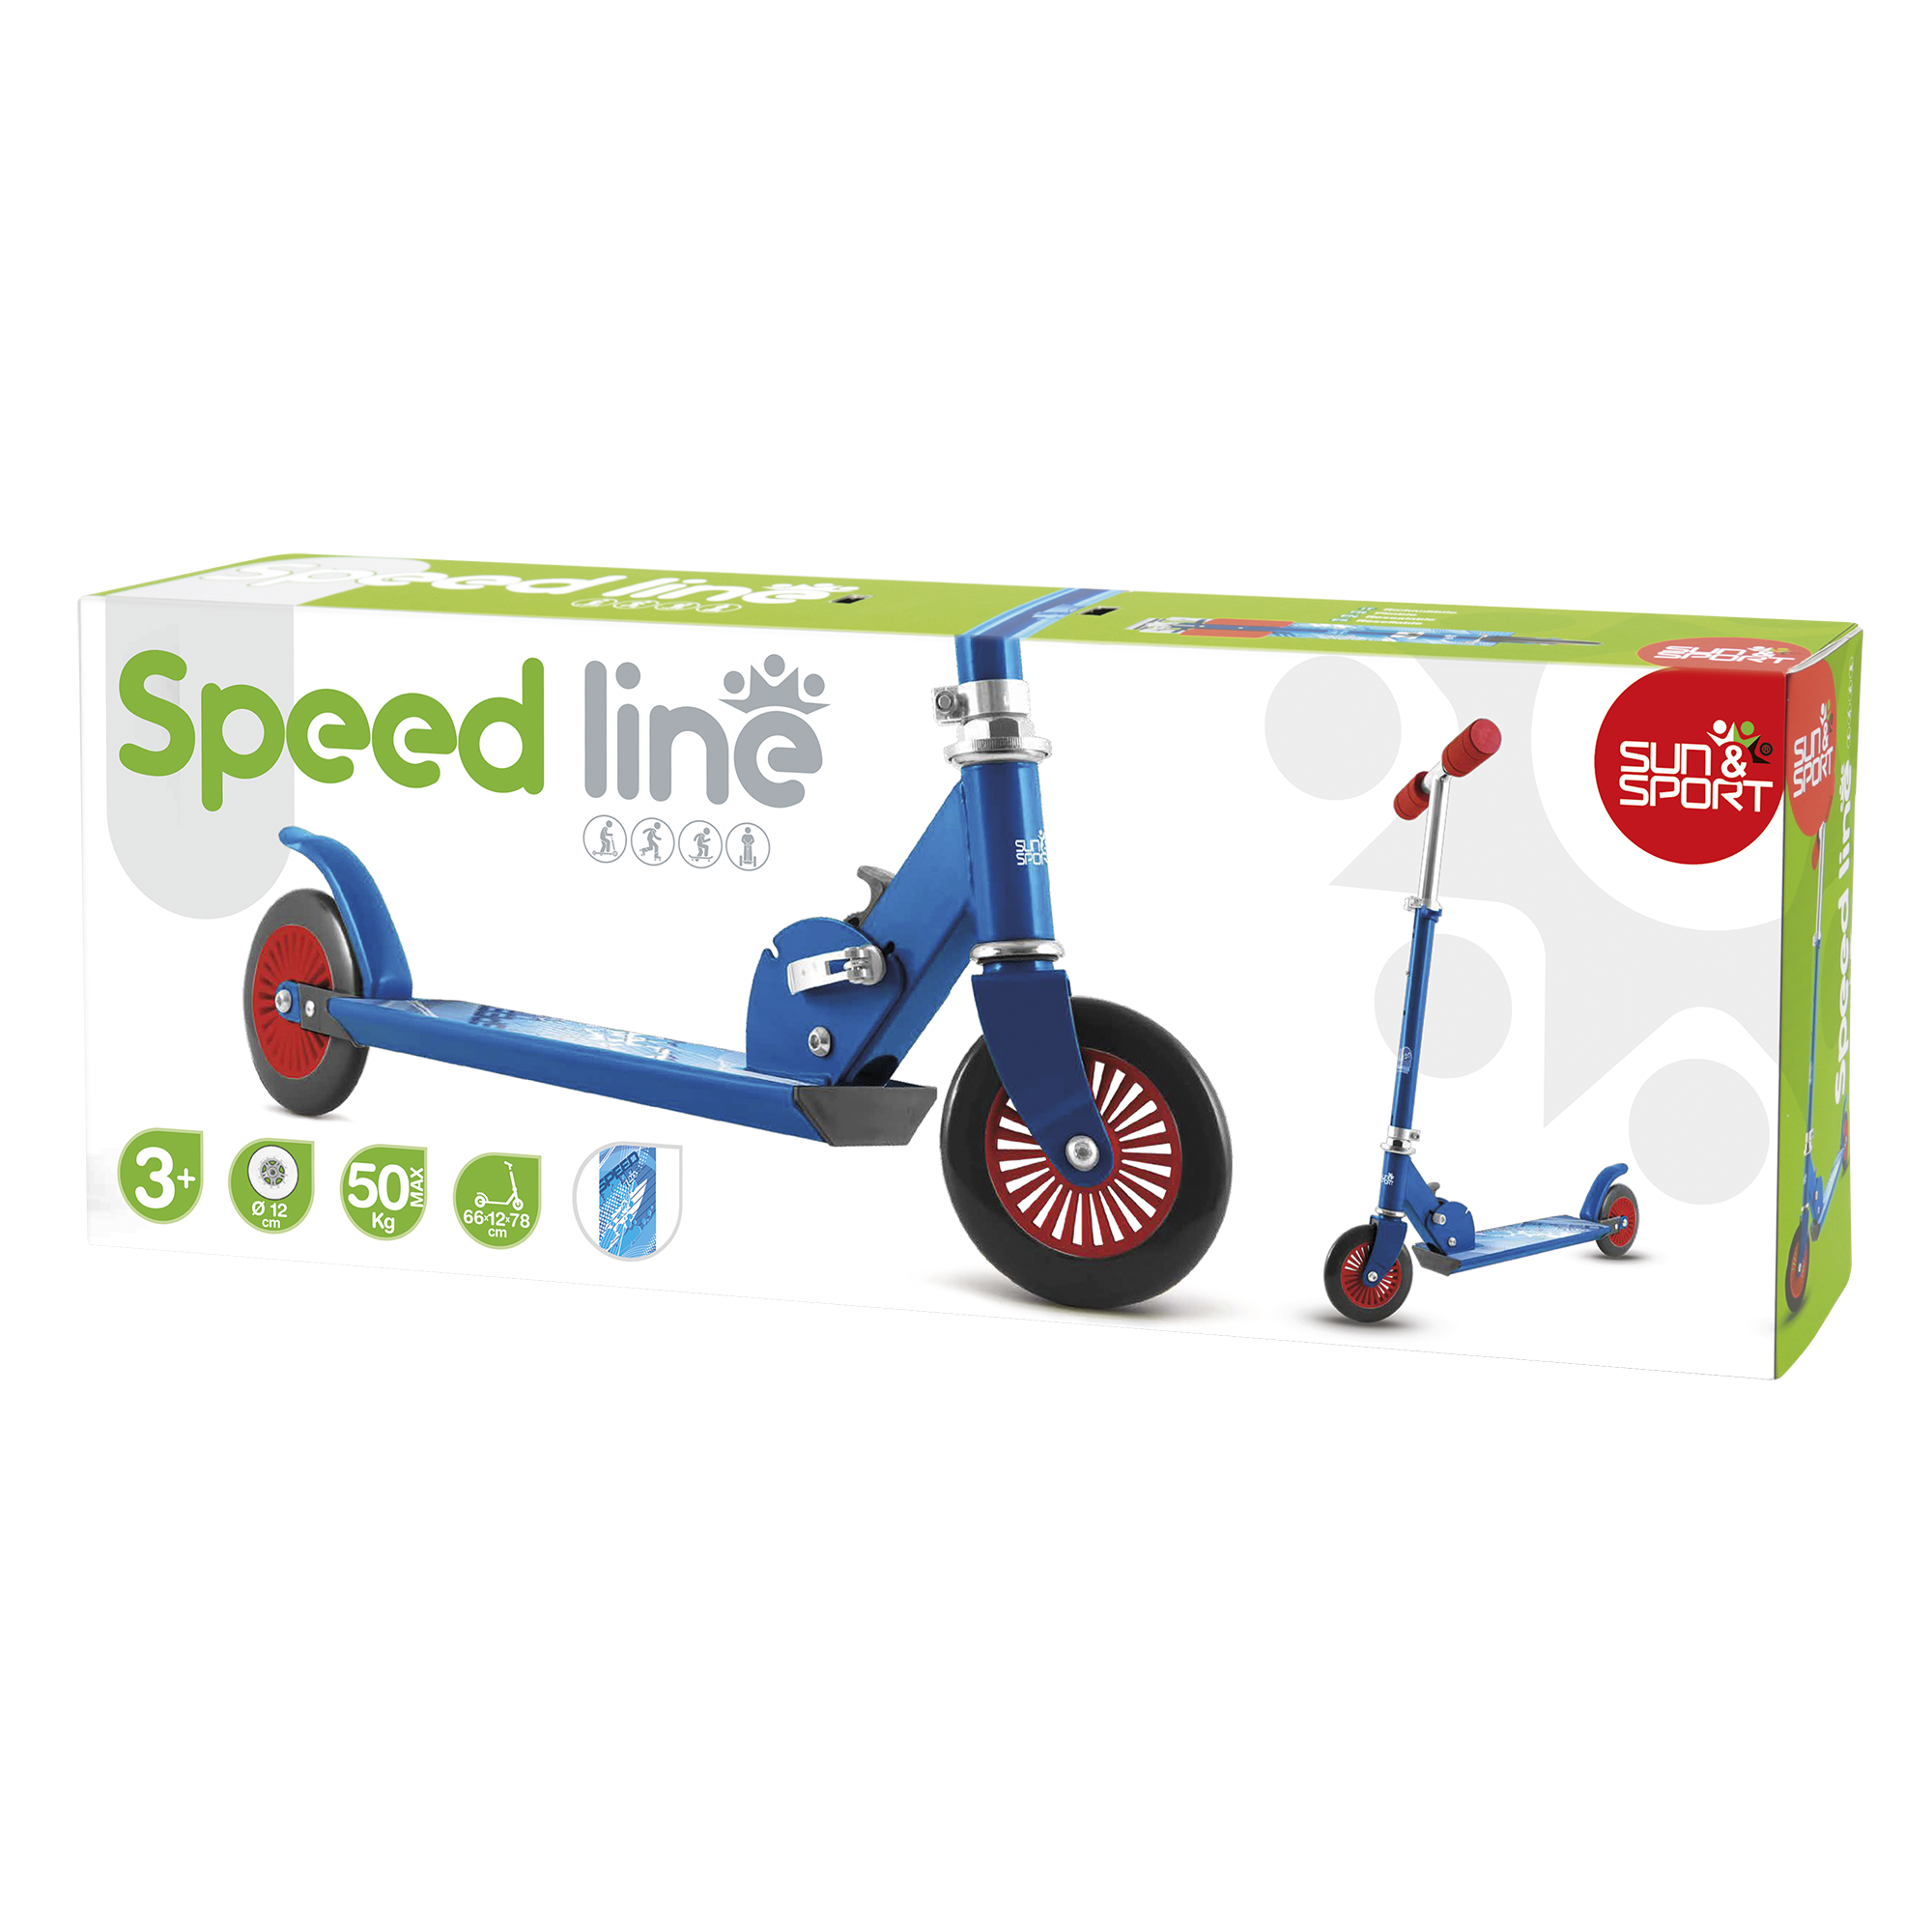 Monopattino speed line – ruote 120 mm - disponibile in 2 colori - SUN&SPORT